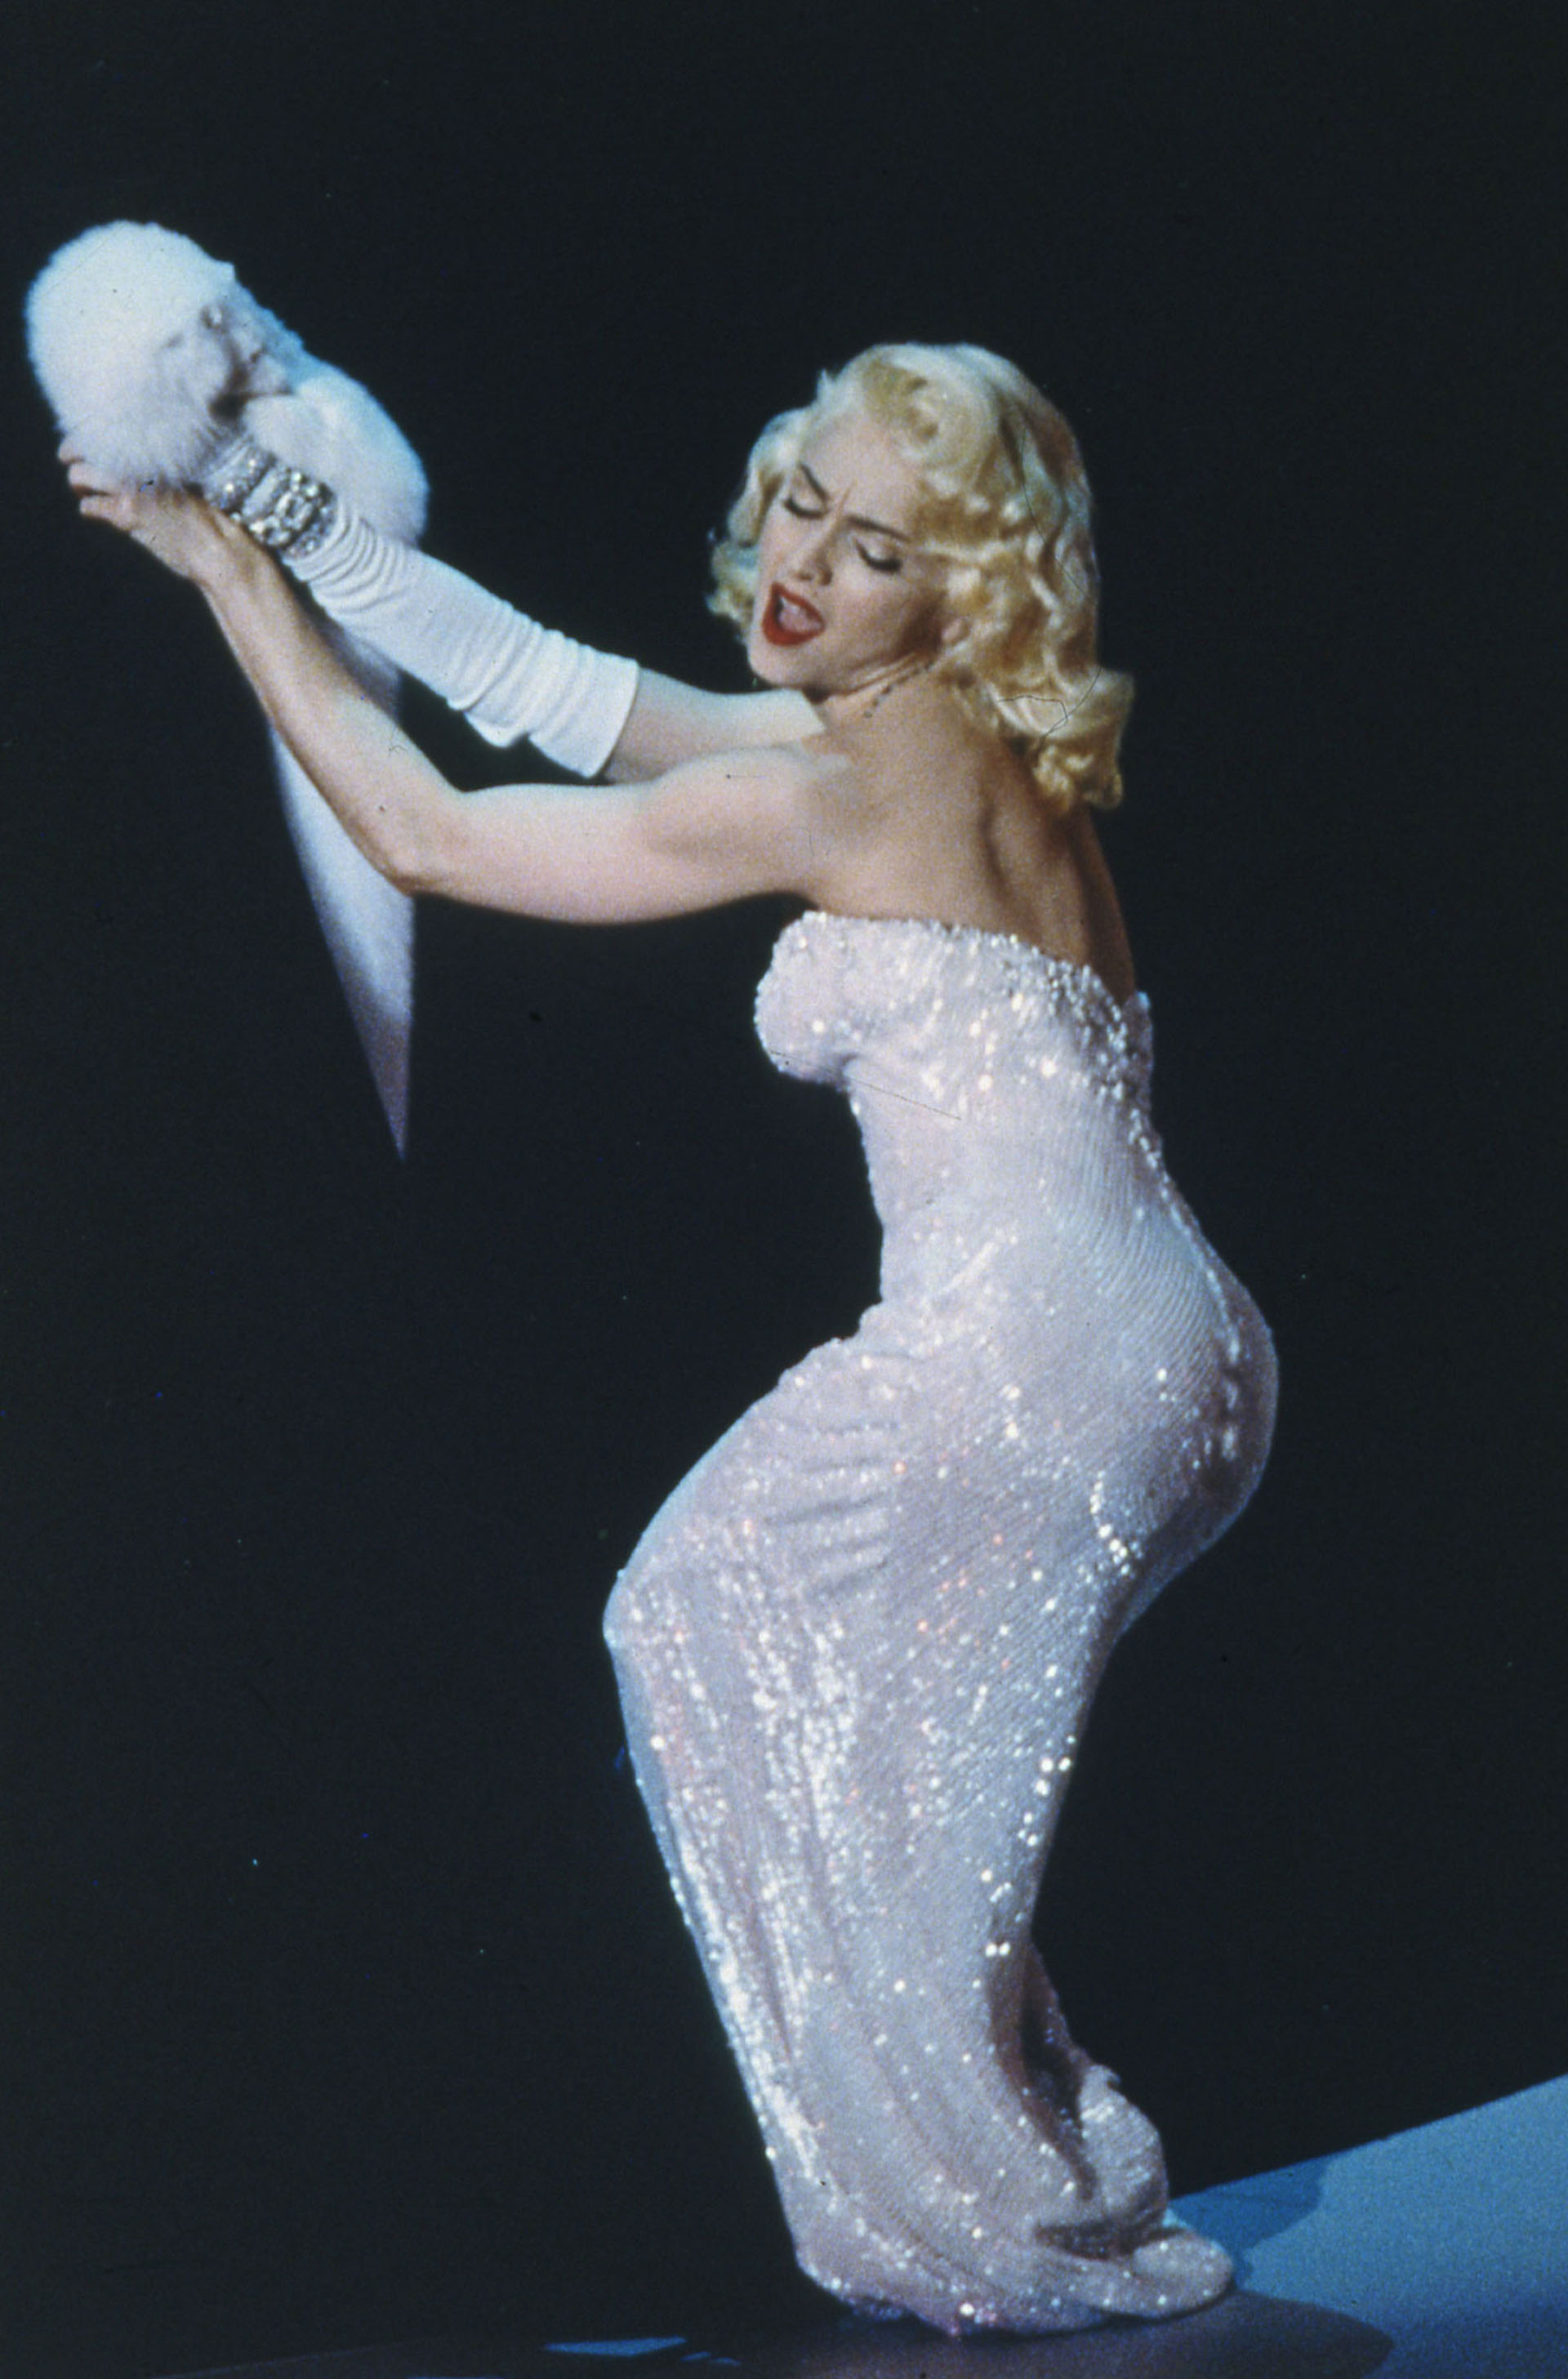 4. Madonna supo lucir el estilo de la legendaria diva Marilyn Monroe en distintos recitales.